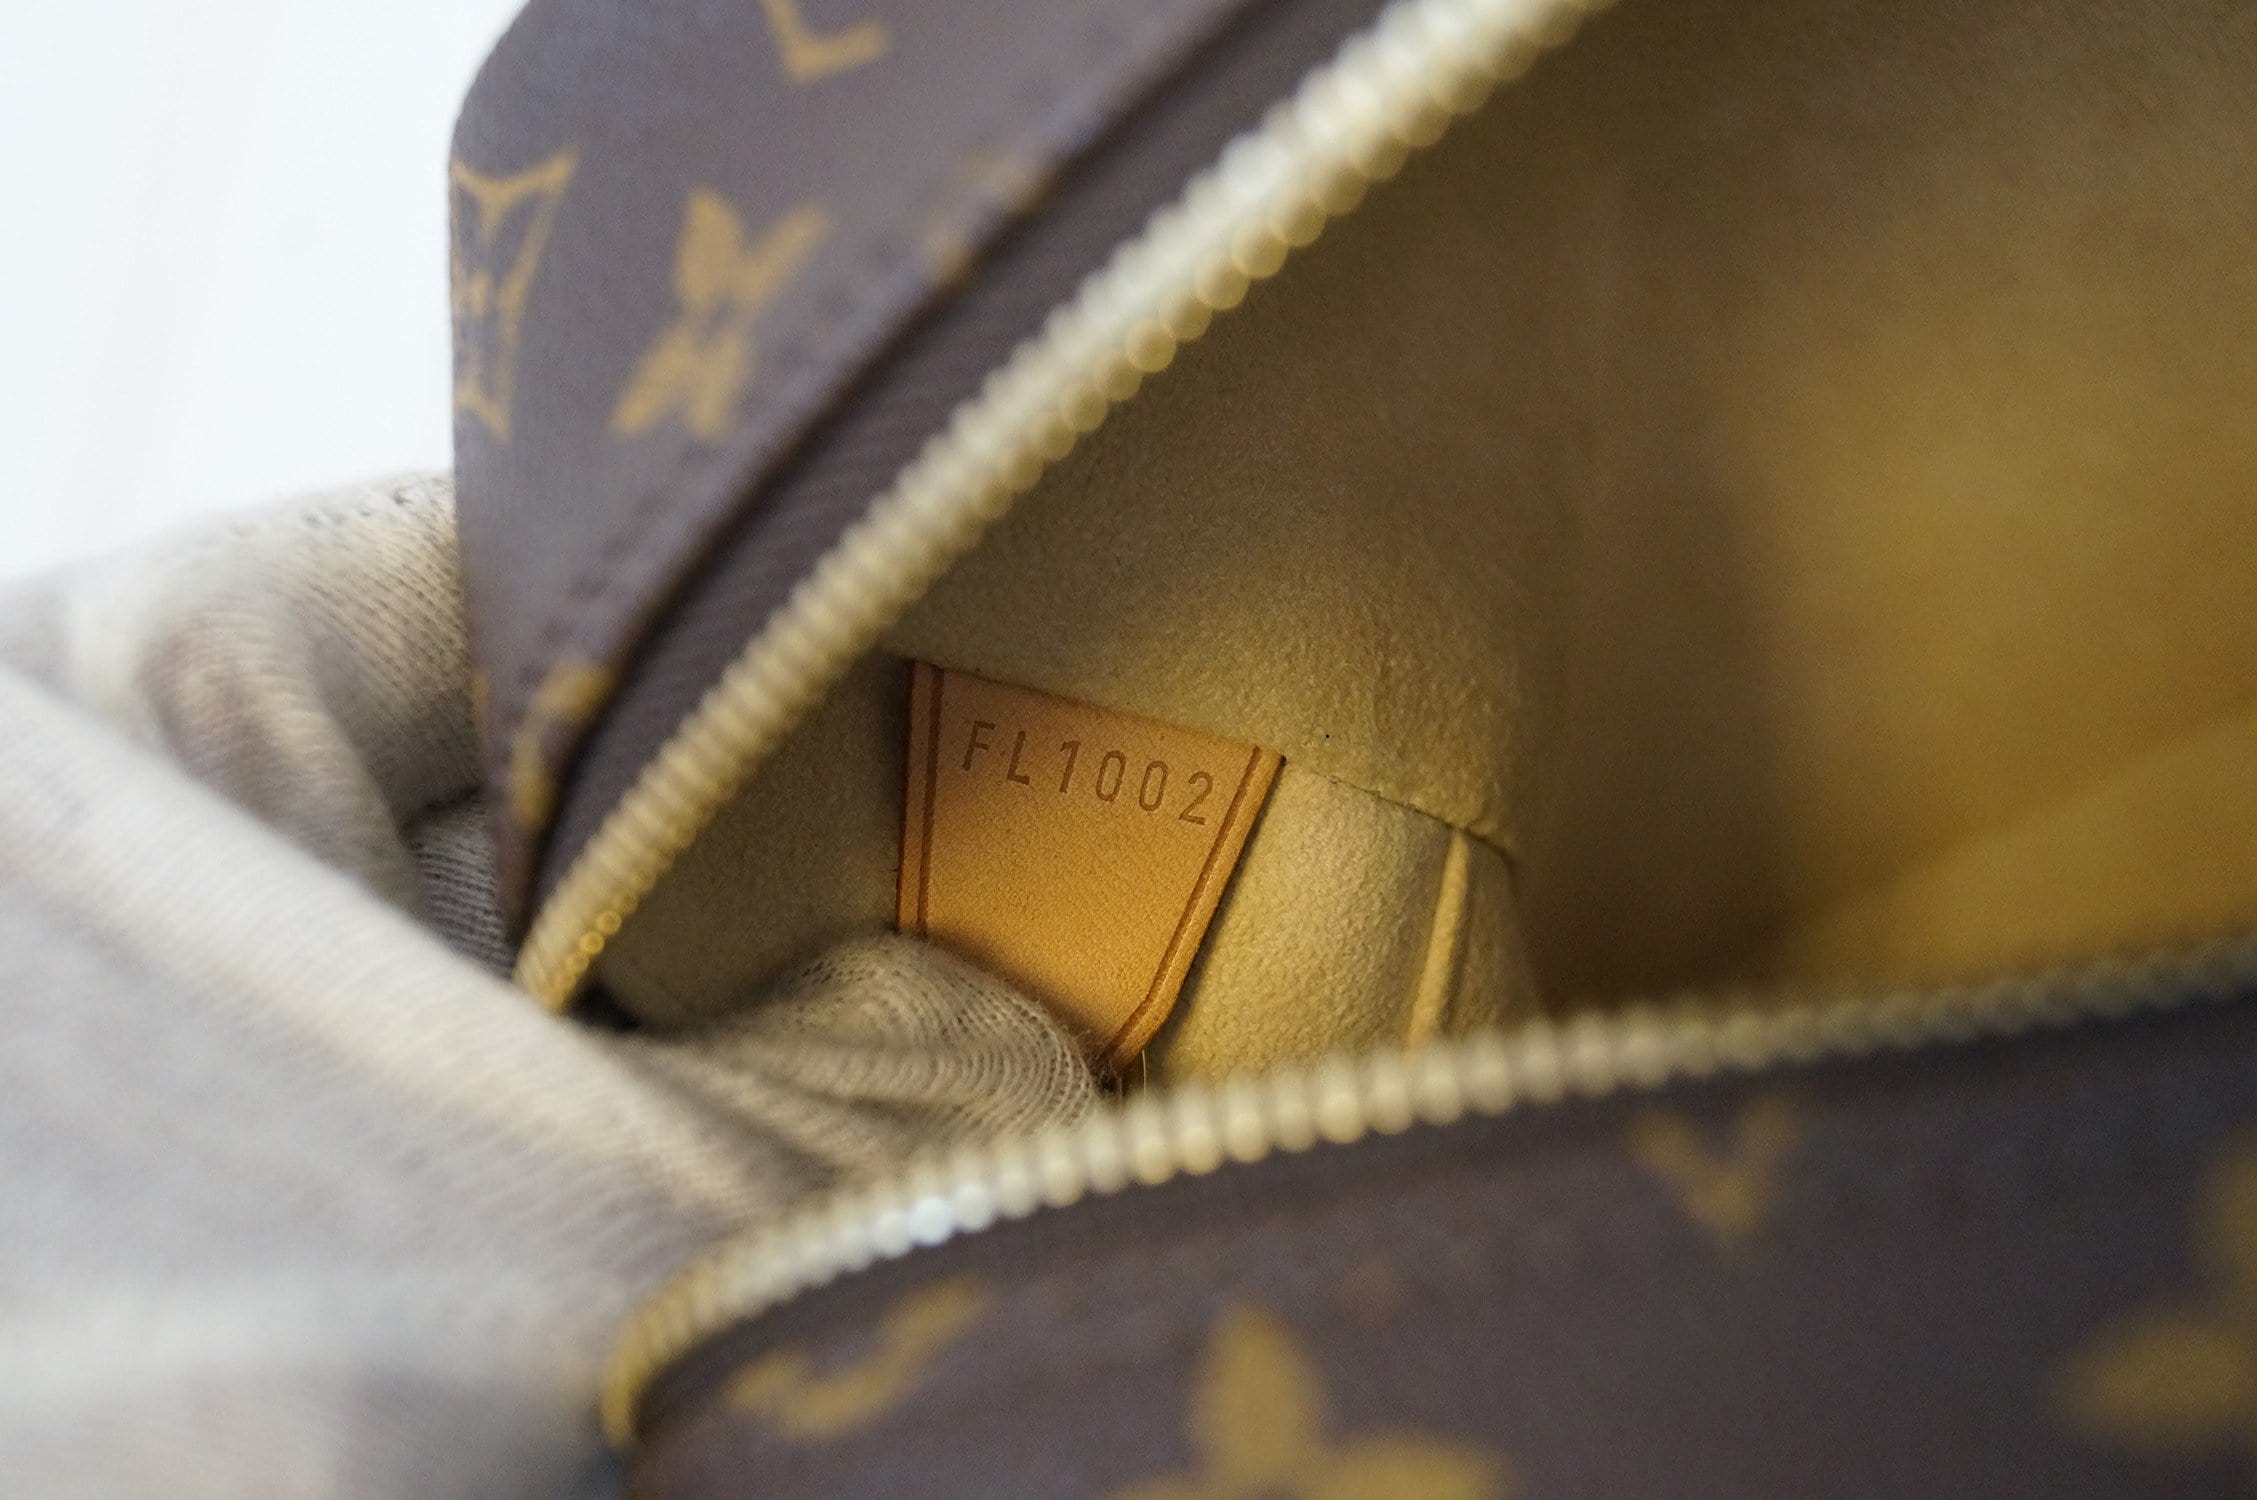 Louis Vuitton, Bags, Authentic Louis Vuitton Cite Gm Shoulder Bag  Monogram Canvas